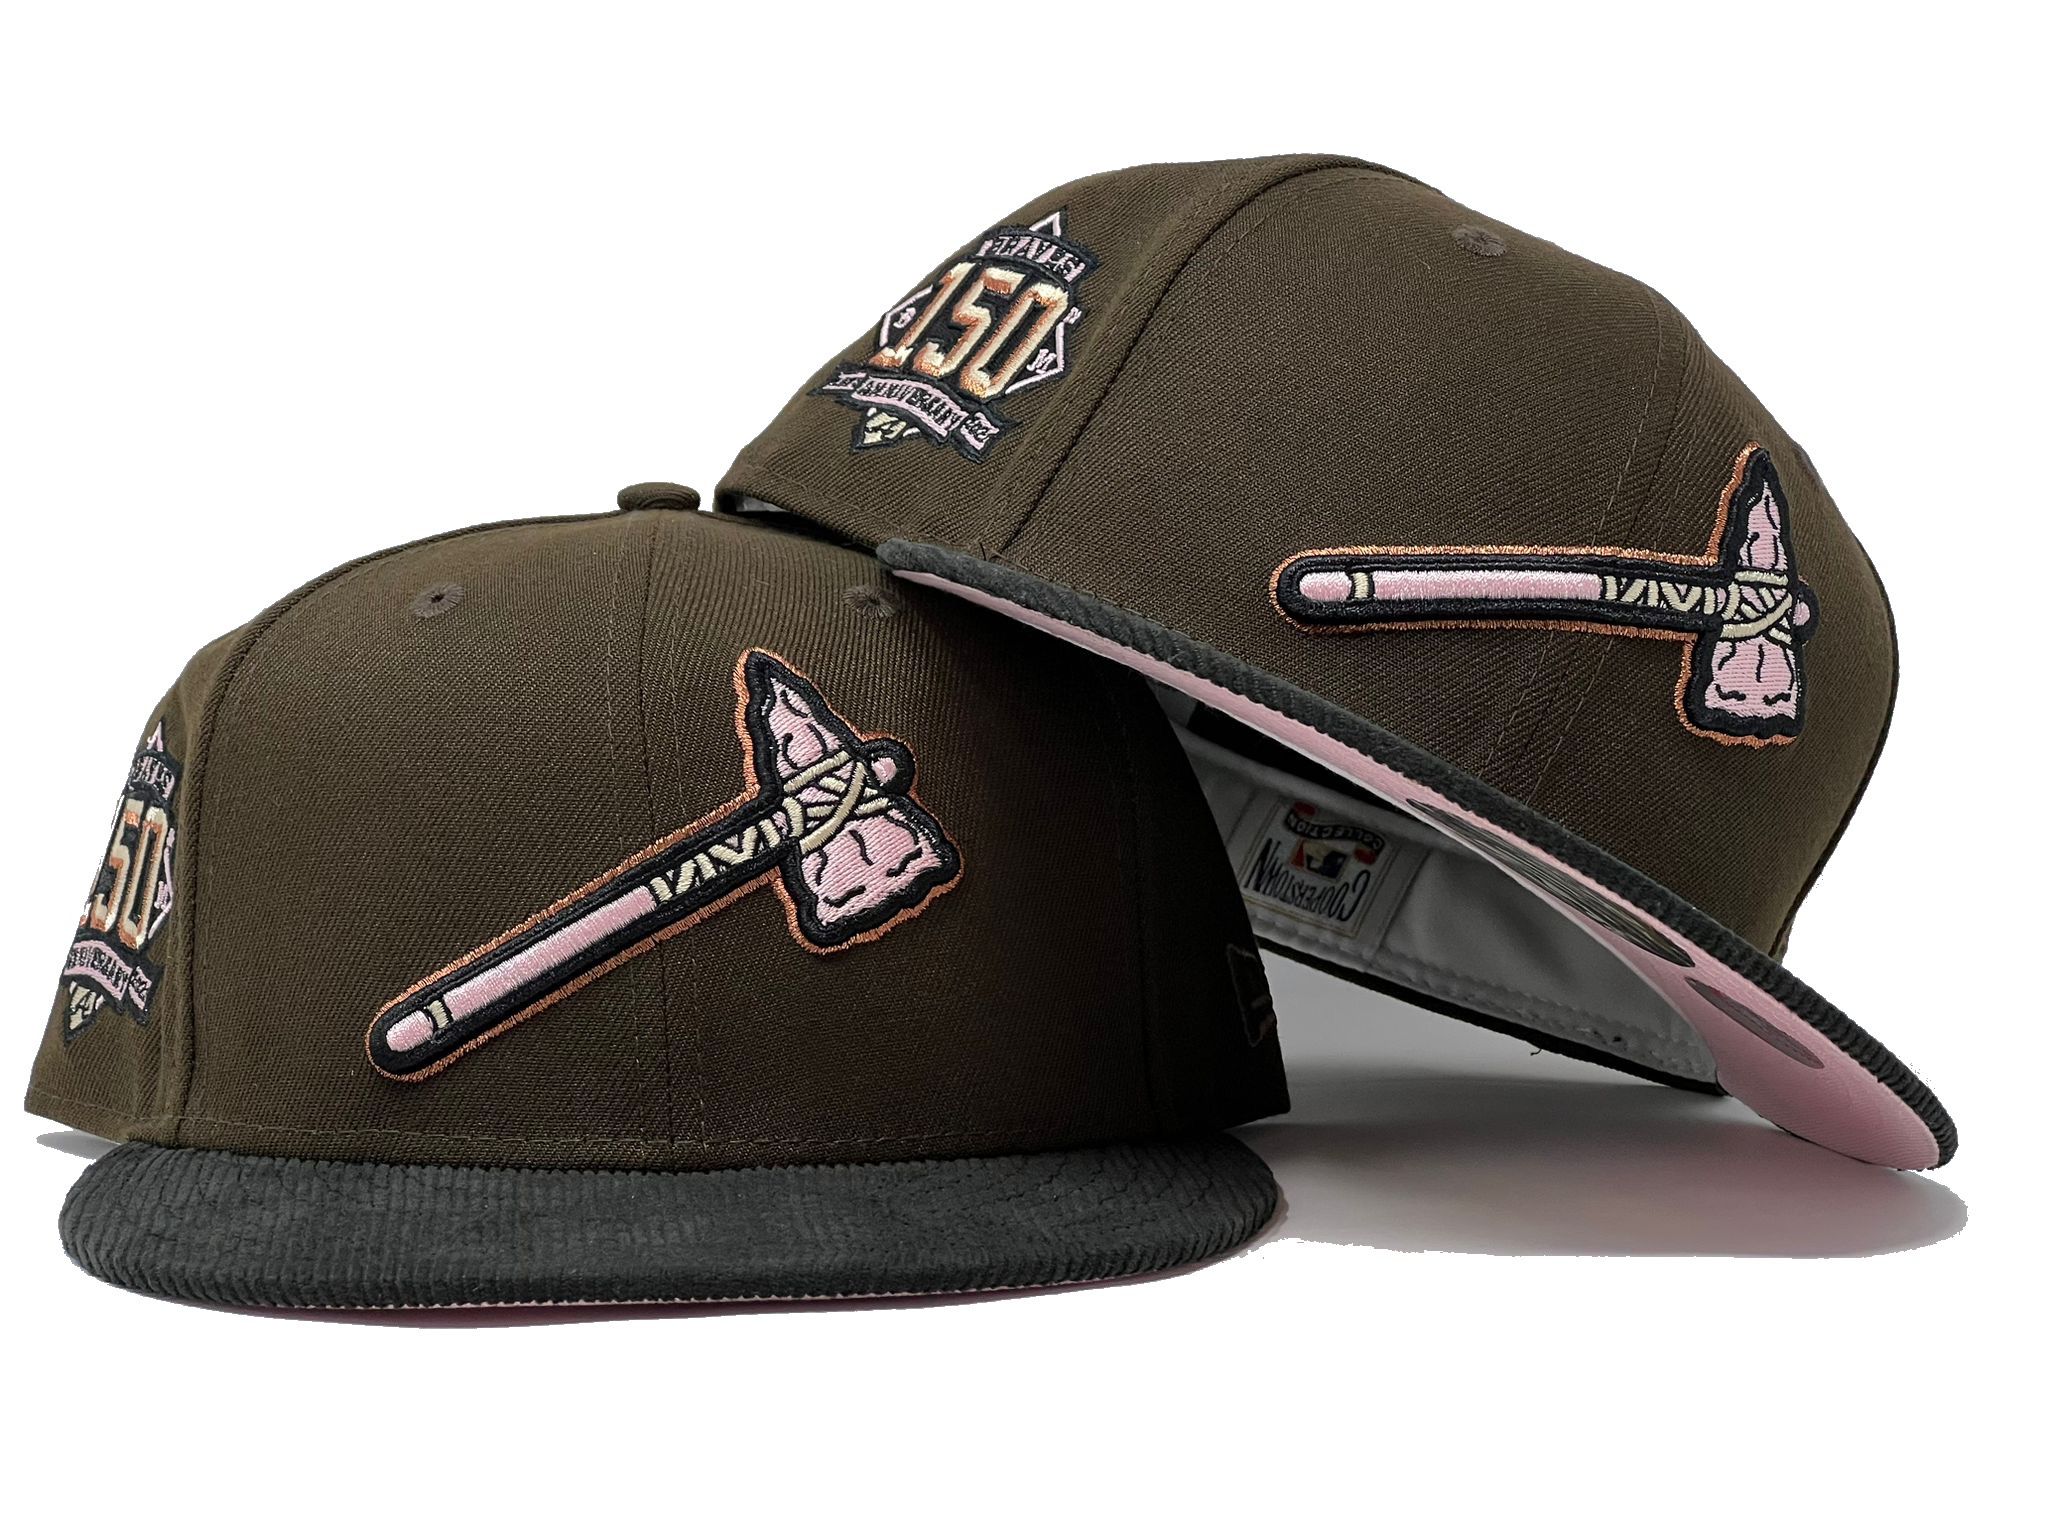 Brown Atlanta Braves Hat, Jersey & Baseballs